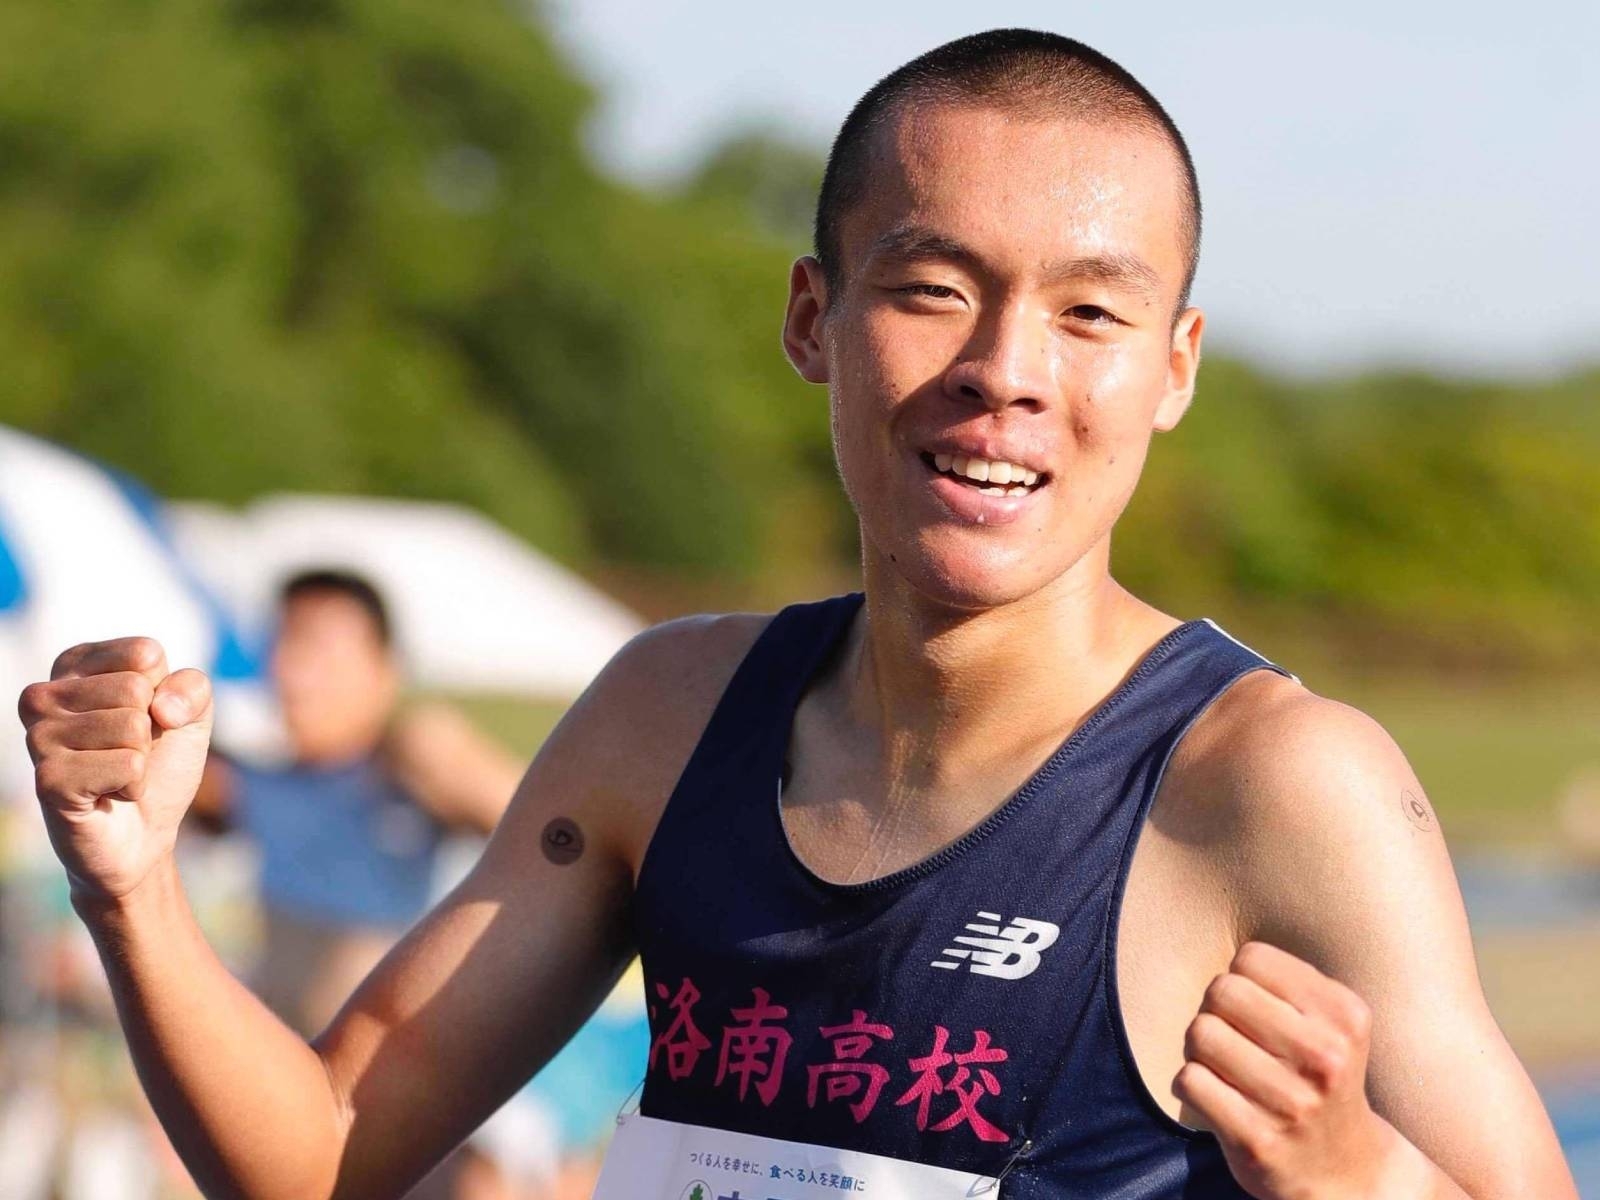 日本高中生佐藤圭汰破 5000 公尺紀錄，跑出 13 分 31 秒 19 比台灣全中運、全大運冠軍還快！